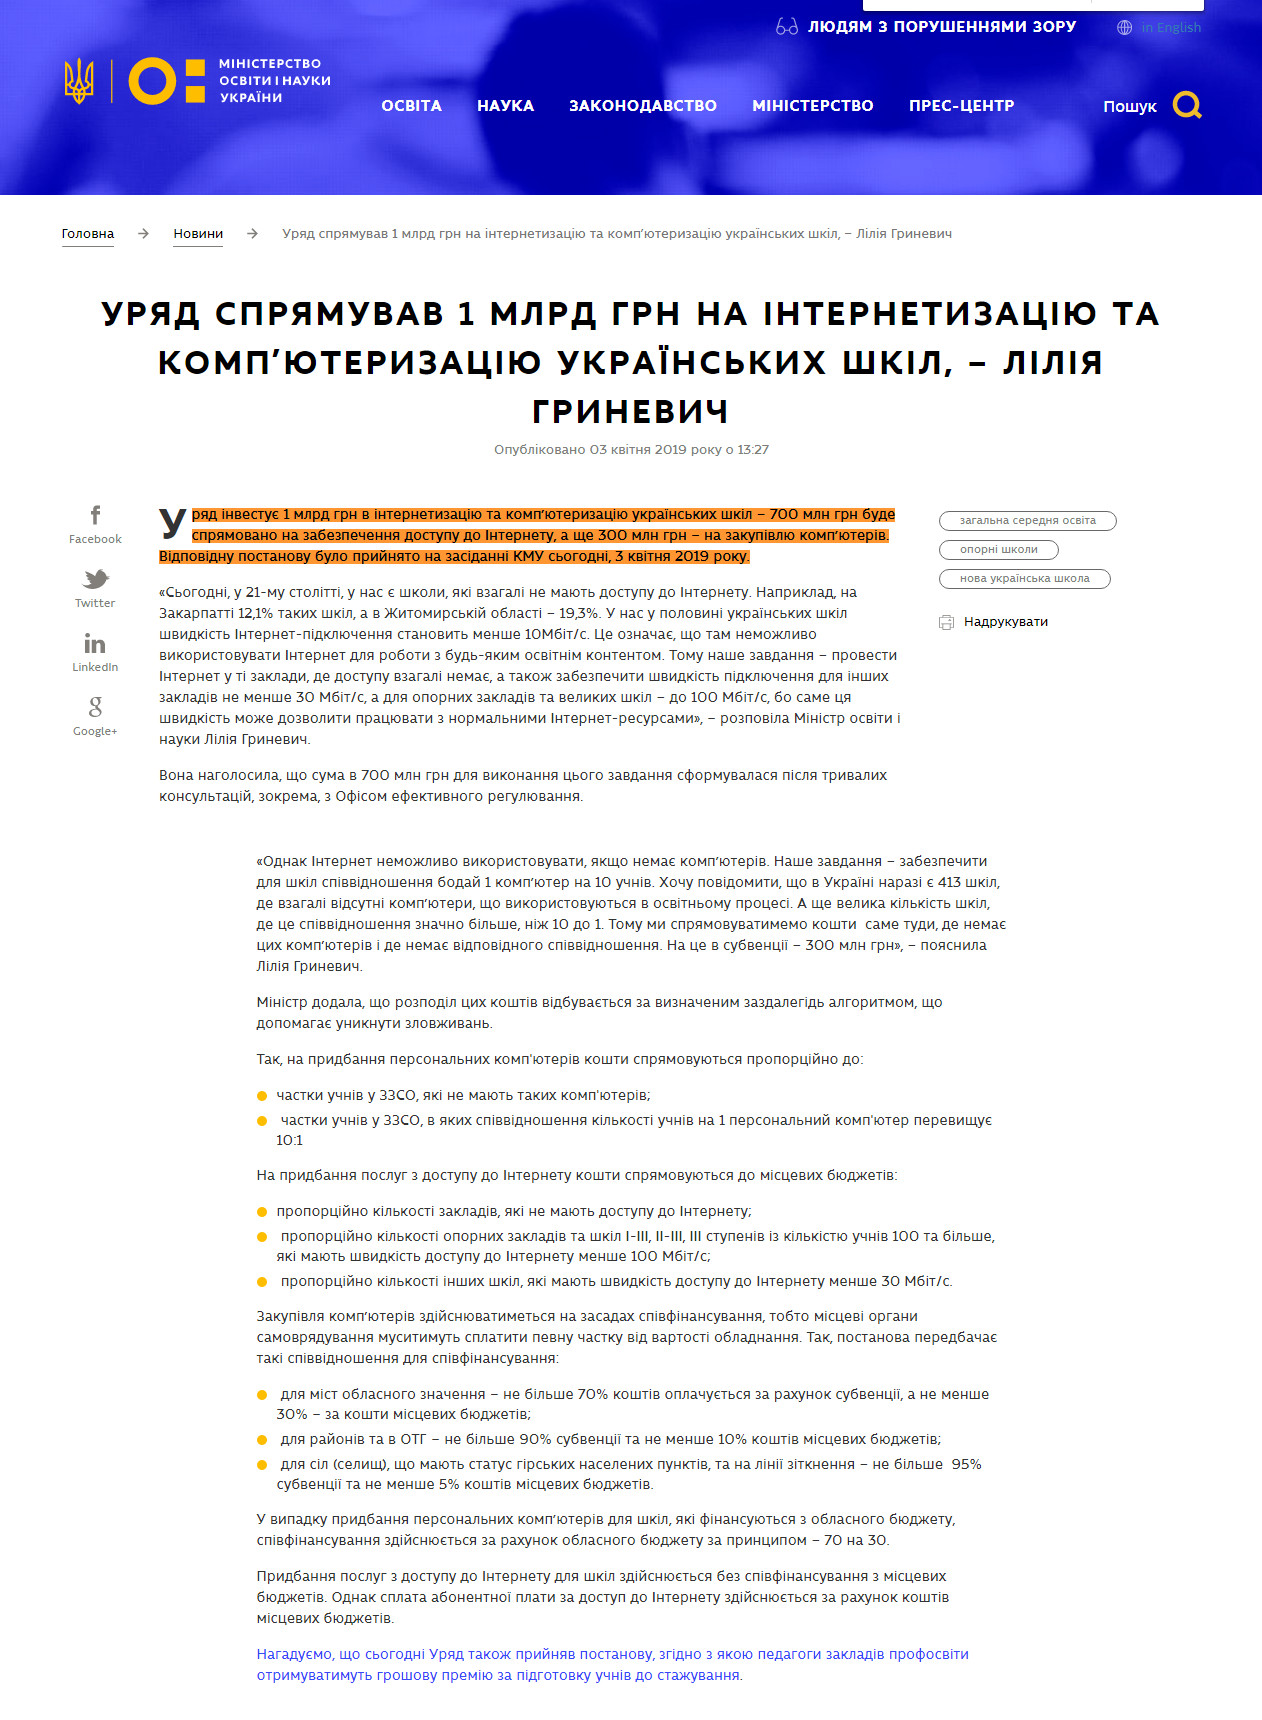 https://mon.gov.ua/ua/news/uryad-spryamuvav-1-mlrd-grn-na-internetizaciyu-ta-kompyuterizaciyu-ukrayinskih-shkil-liliya-grinevich